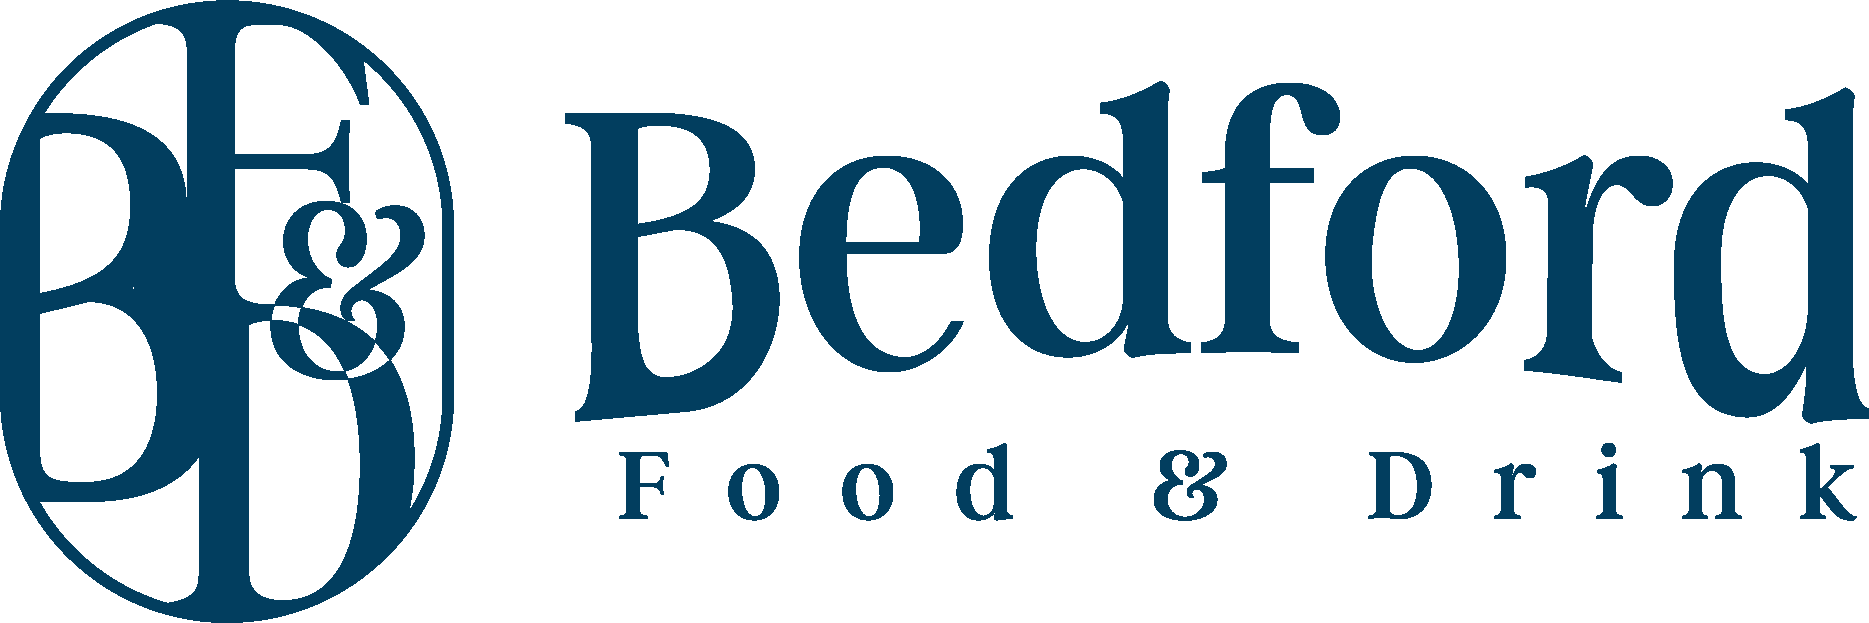 Bedford Food & Drink